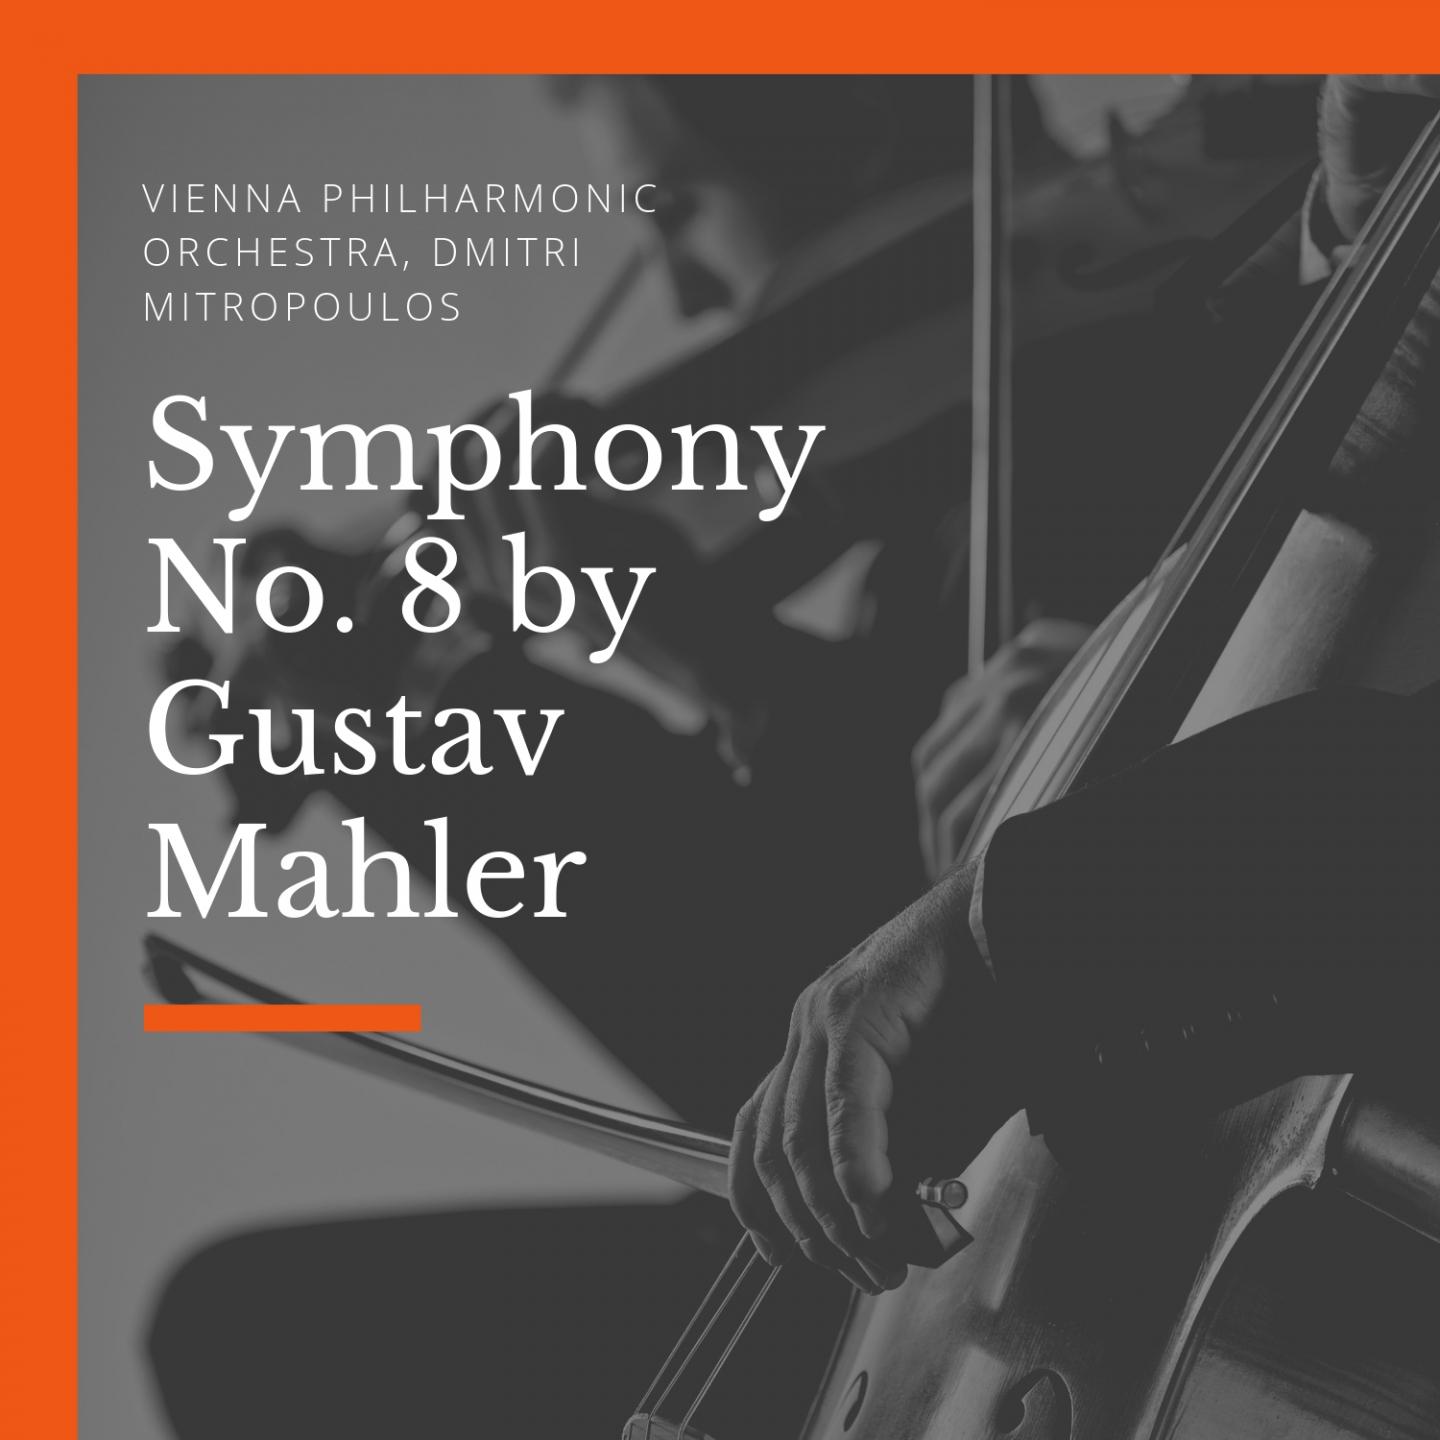 Symphony No. 8 by Gustav Mahler